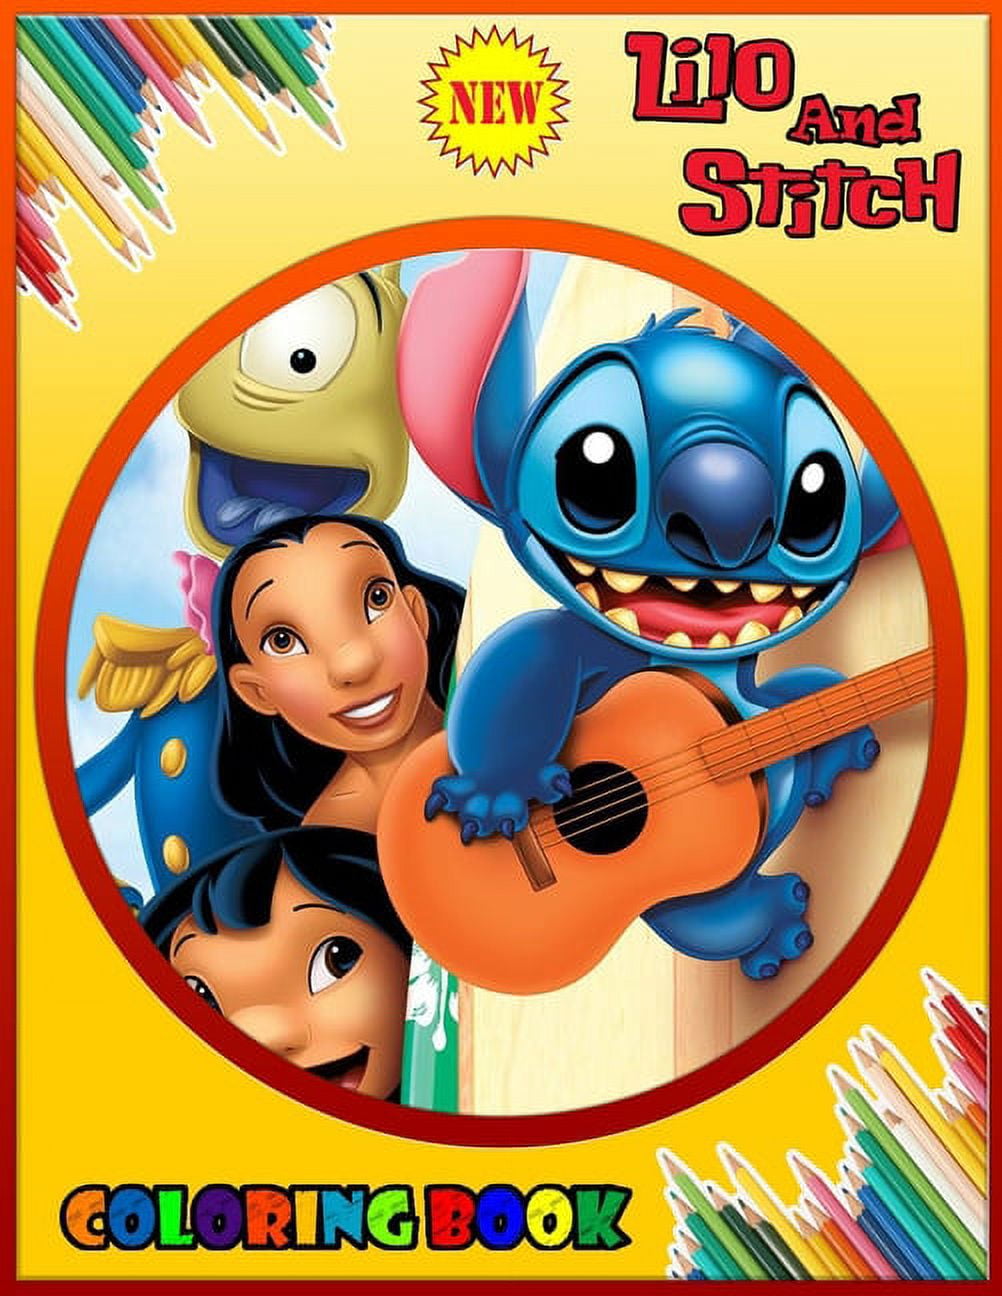 Lilo e Stitch (Disney) com o texto Ohana - Retornar à infância - Coloring  Pages for Adults